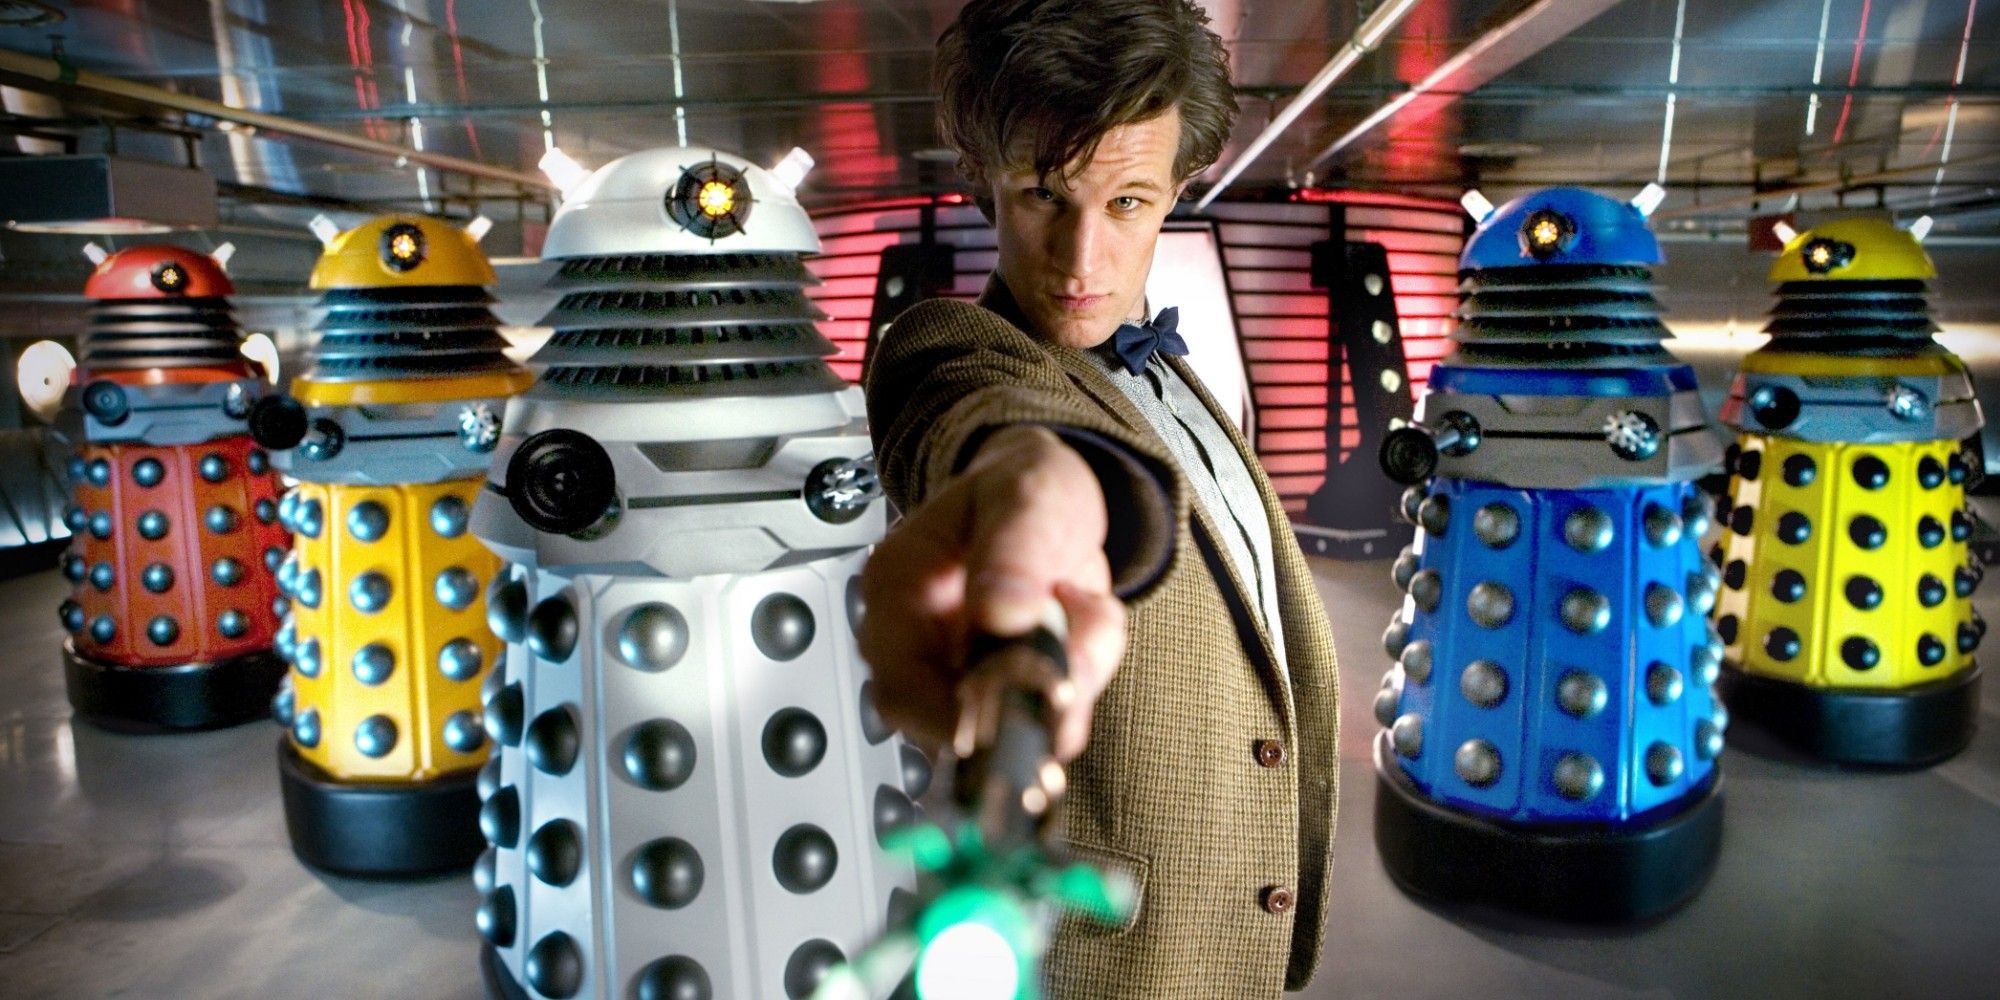 O Doutor posa na frente de uma fileira de Daleks multicoloridos de Doctor Who